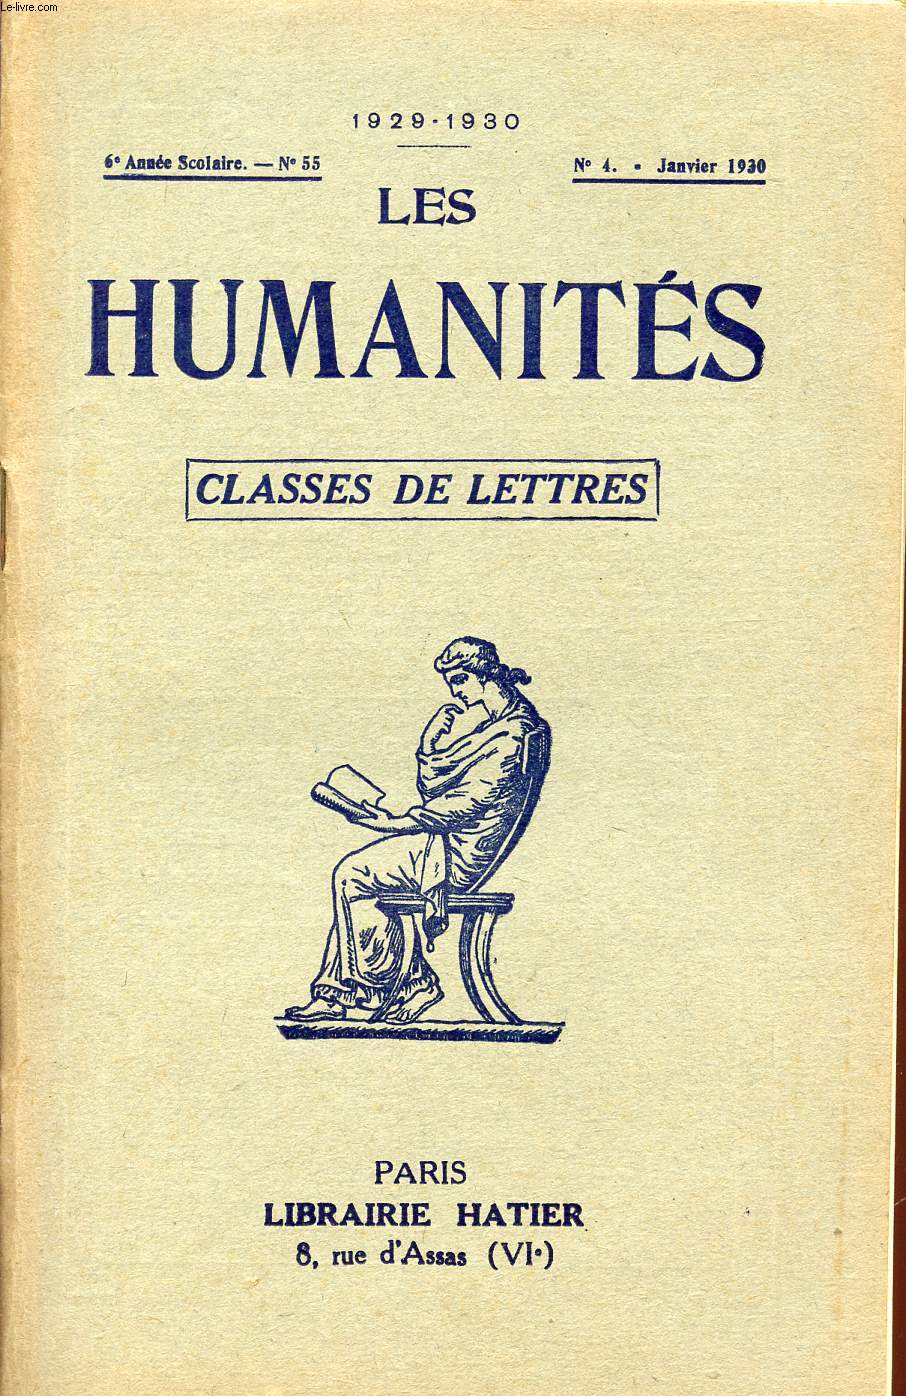 LES HUMANITES / CLASSES DE LETTRES / 6me ANNEE SCOLAIRE - N55 / ANNEE 1929-1930 / N4 - JANVIE 1930.